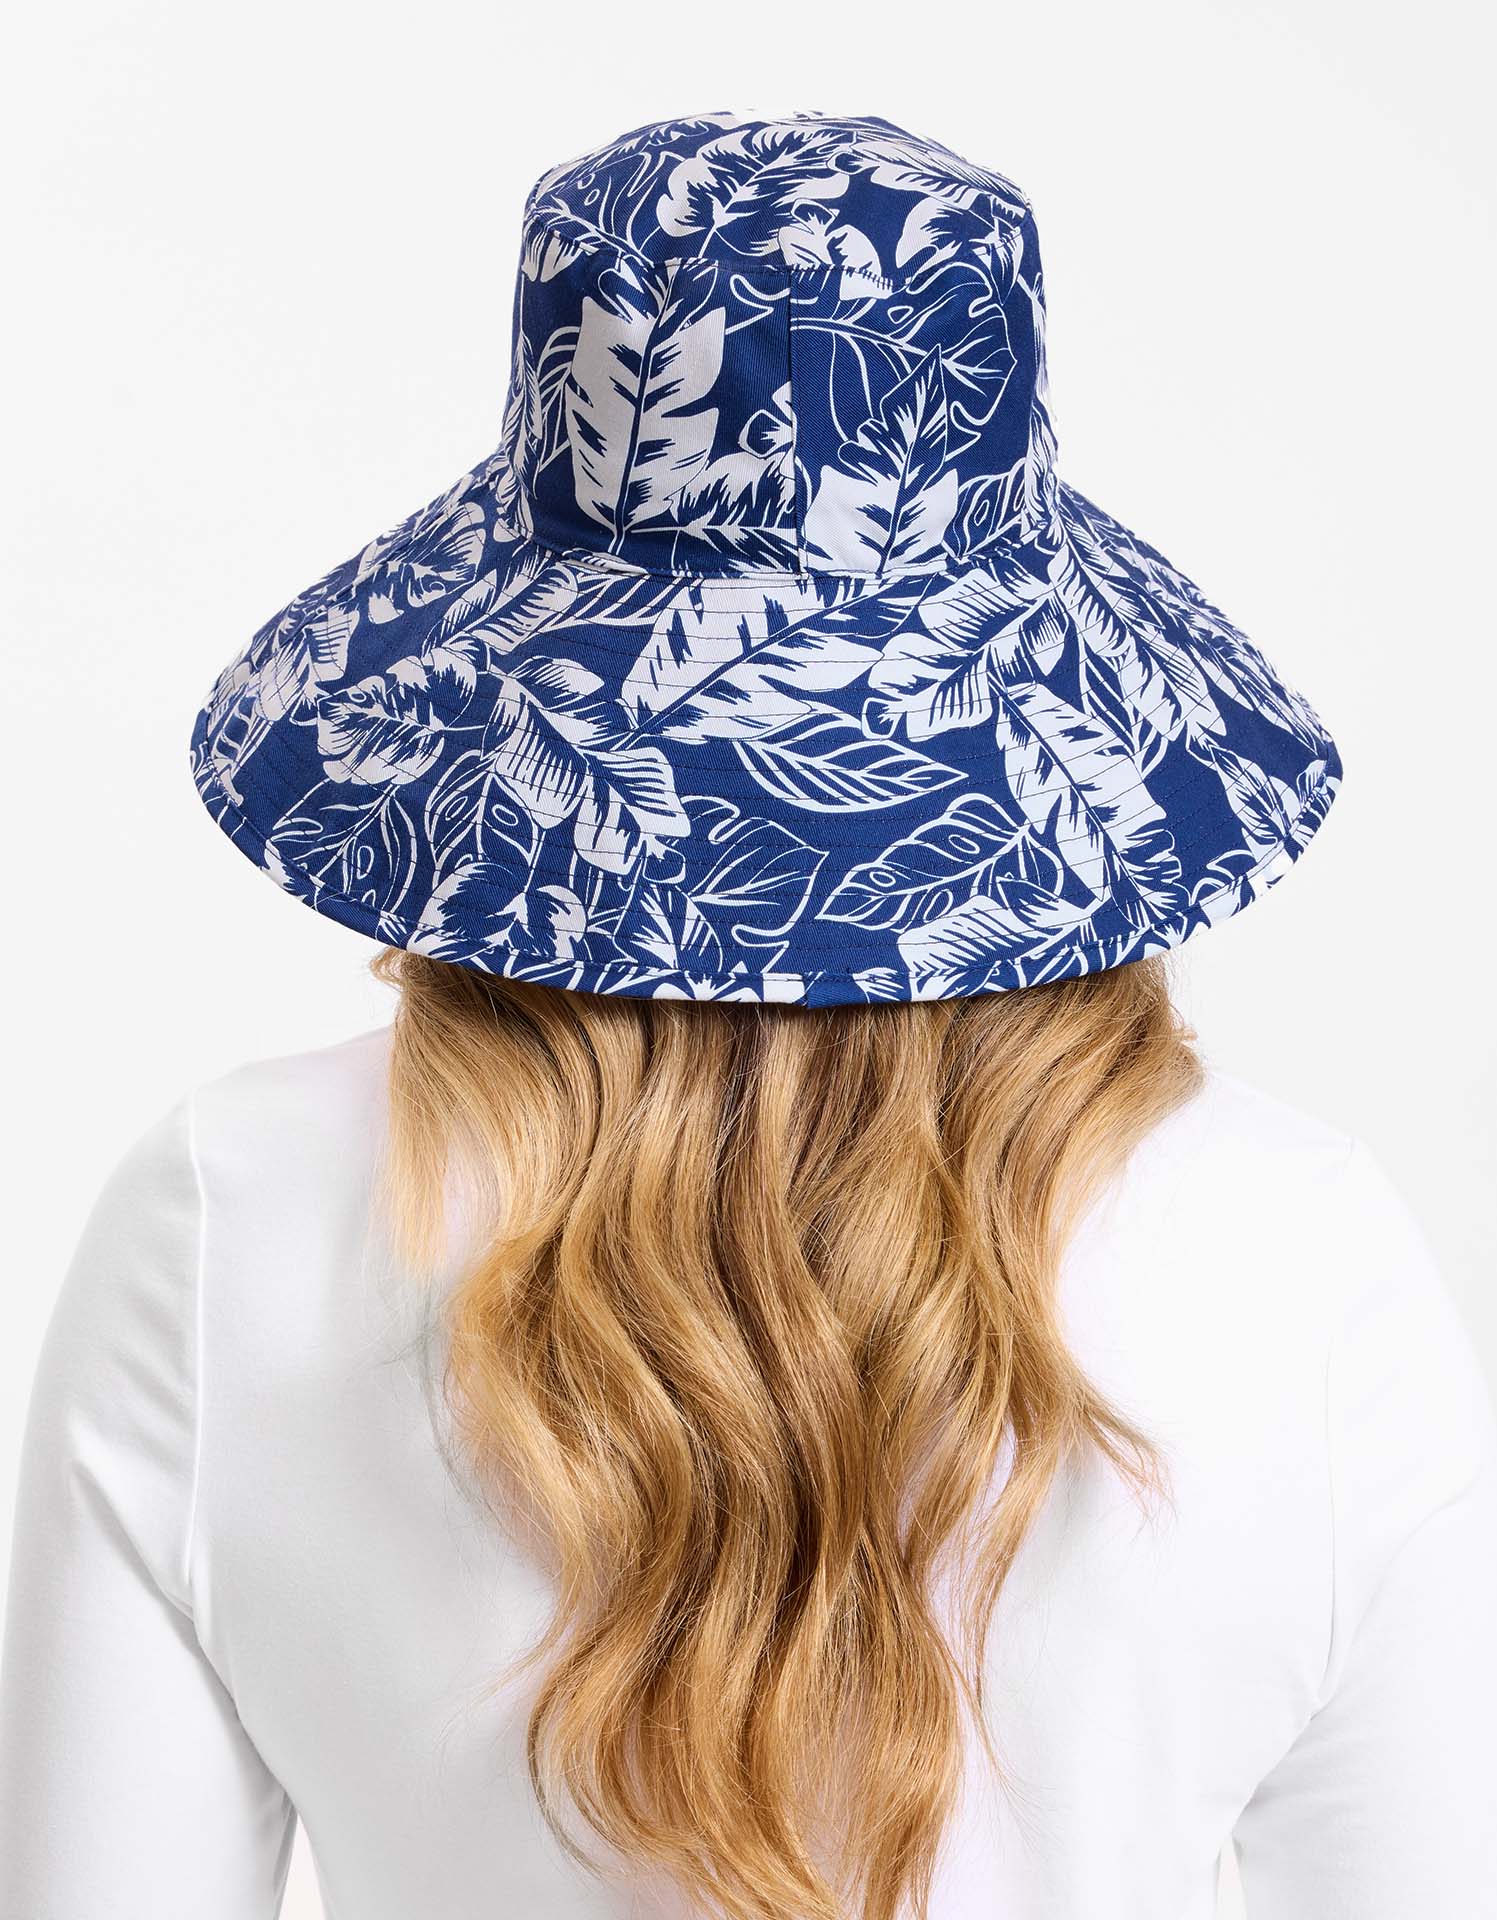 MIER Sun Hats for Women Packable Sun Hat Wide Brim Philippines